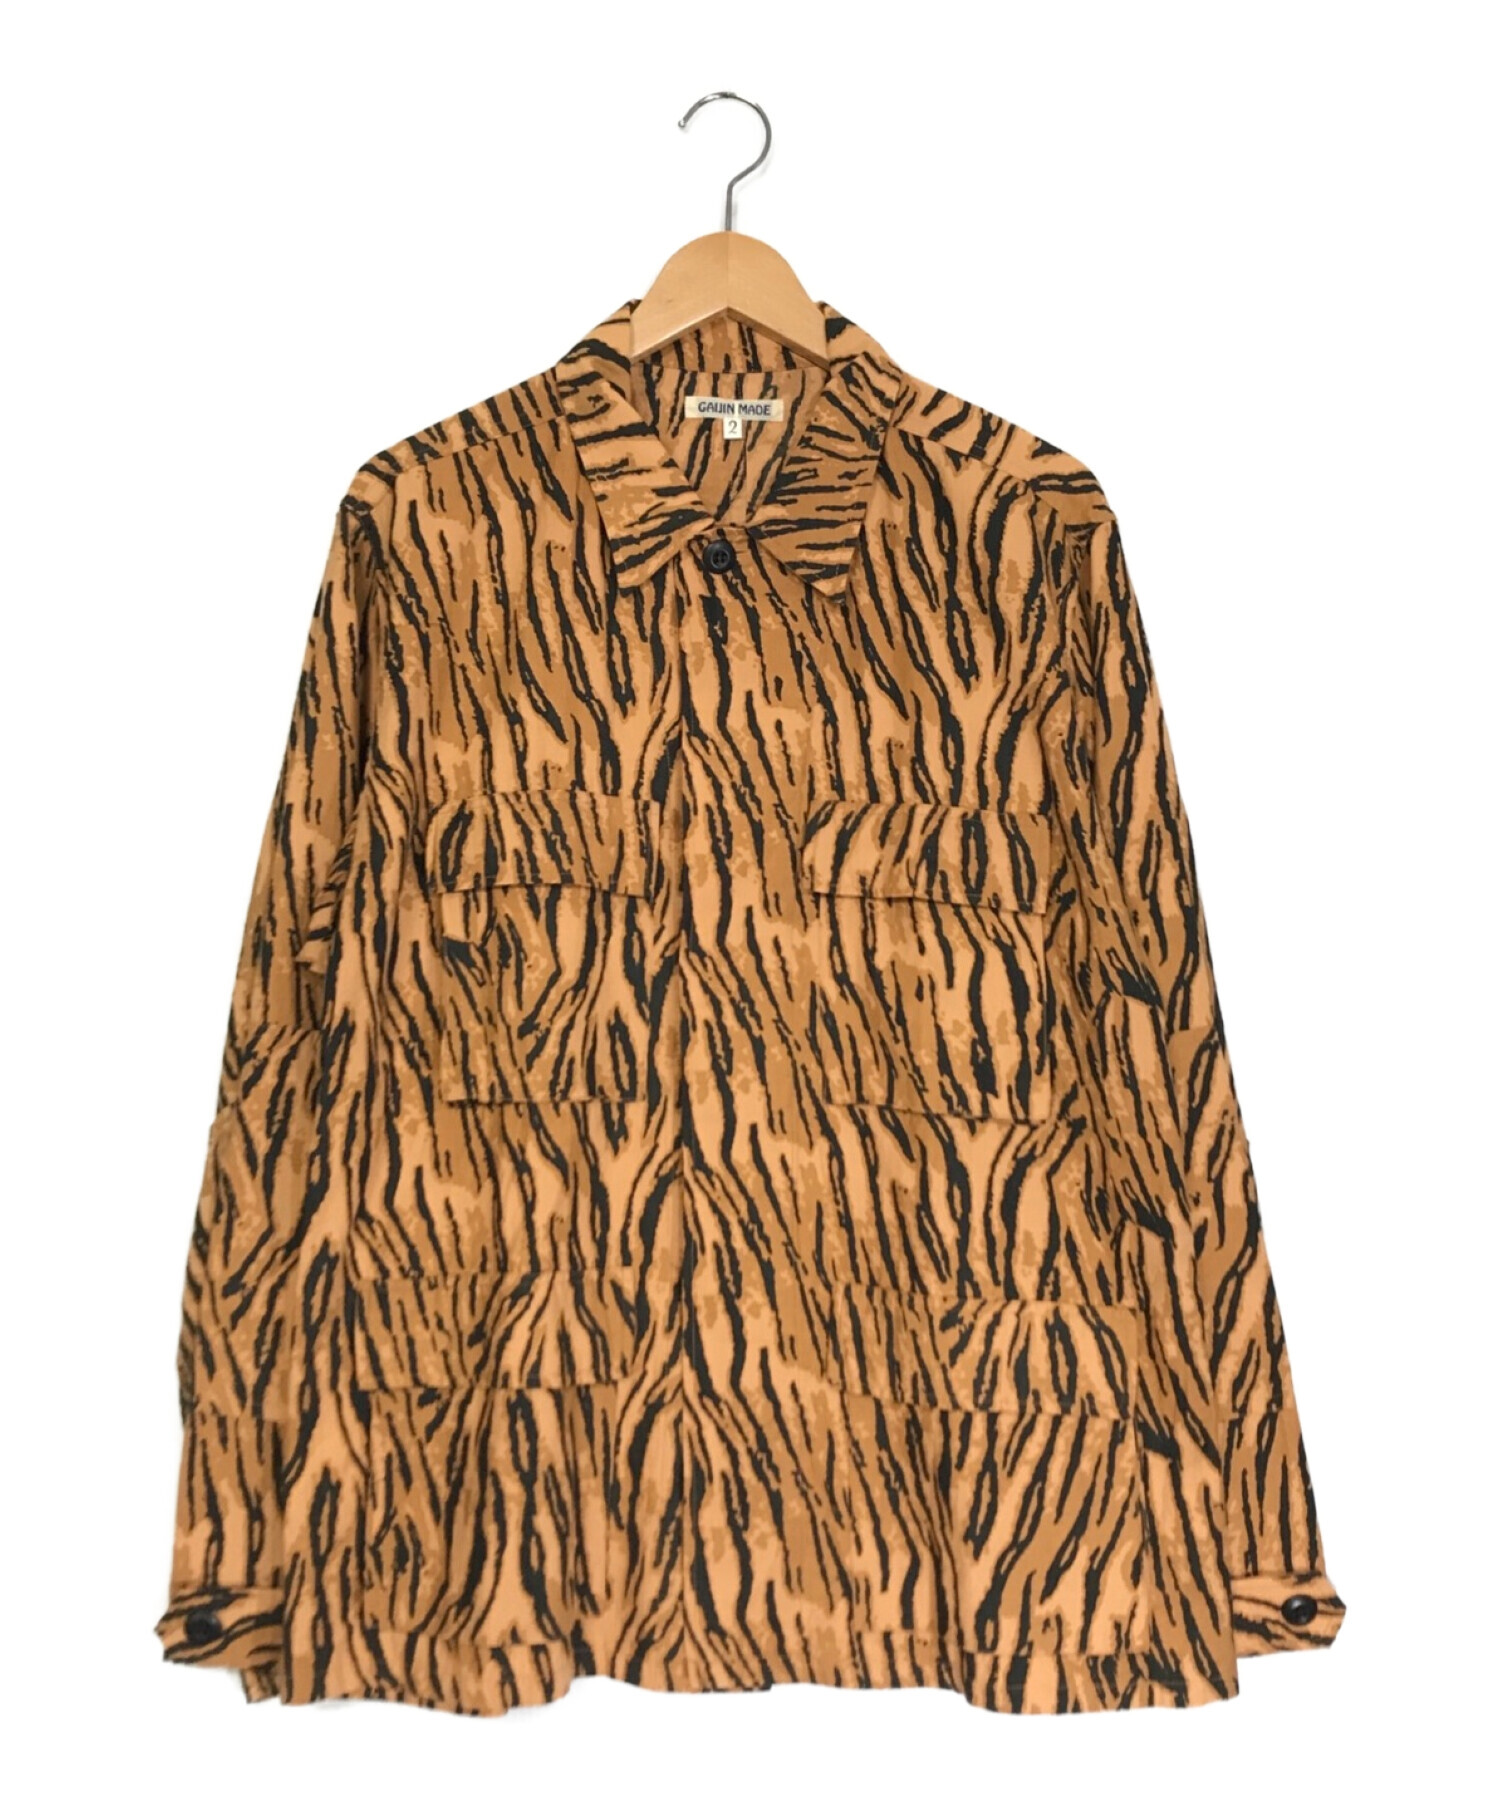 GAIJIN MADE (ガイジンメイド) タイガーパターンミリタリージャケット オレンジ サイズ:2